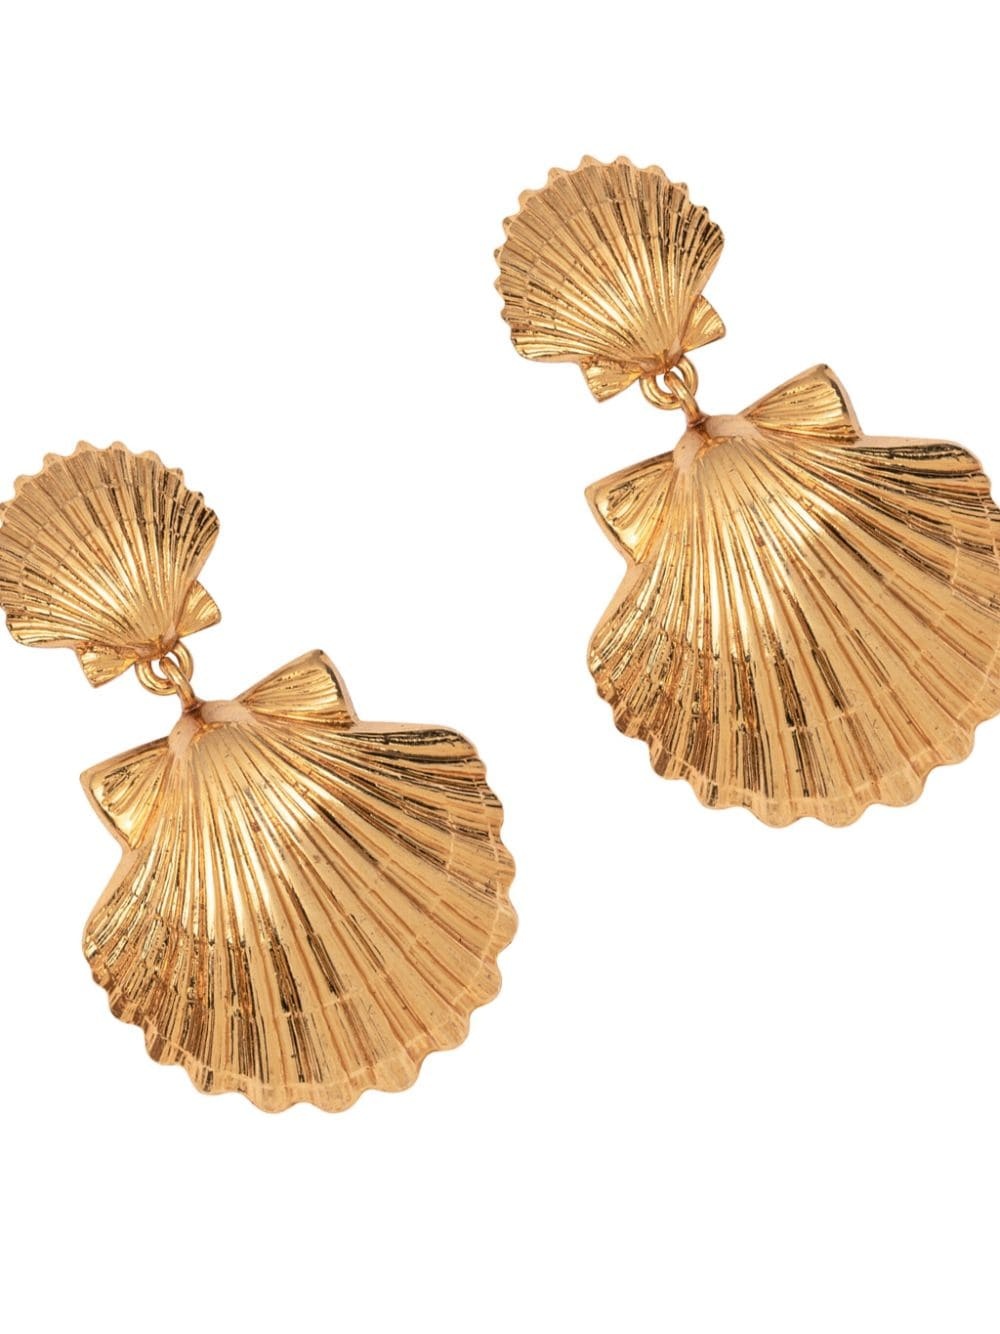 Caspian shell earrings - 2